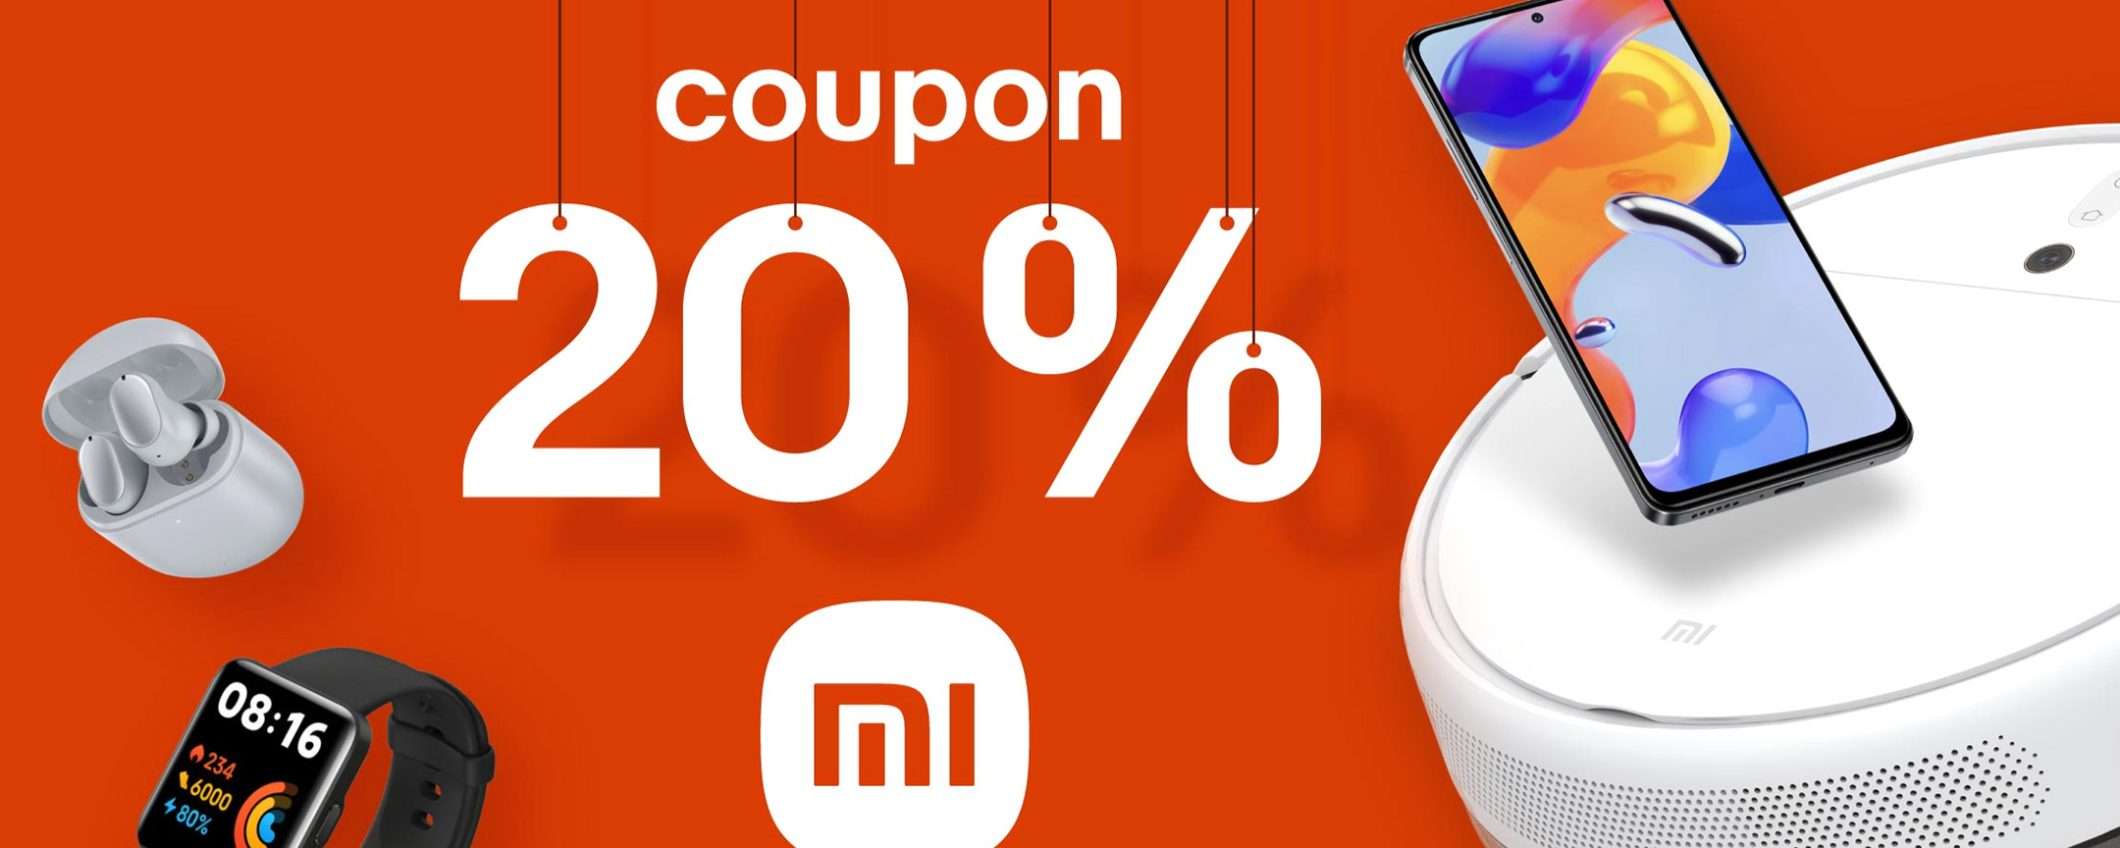 Xiaomi Days: coupon del 20% su smartphone e accessori